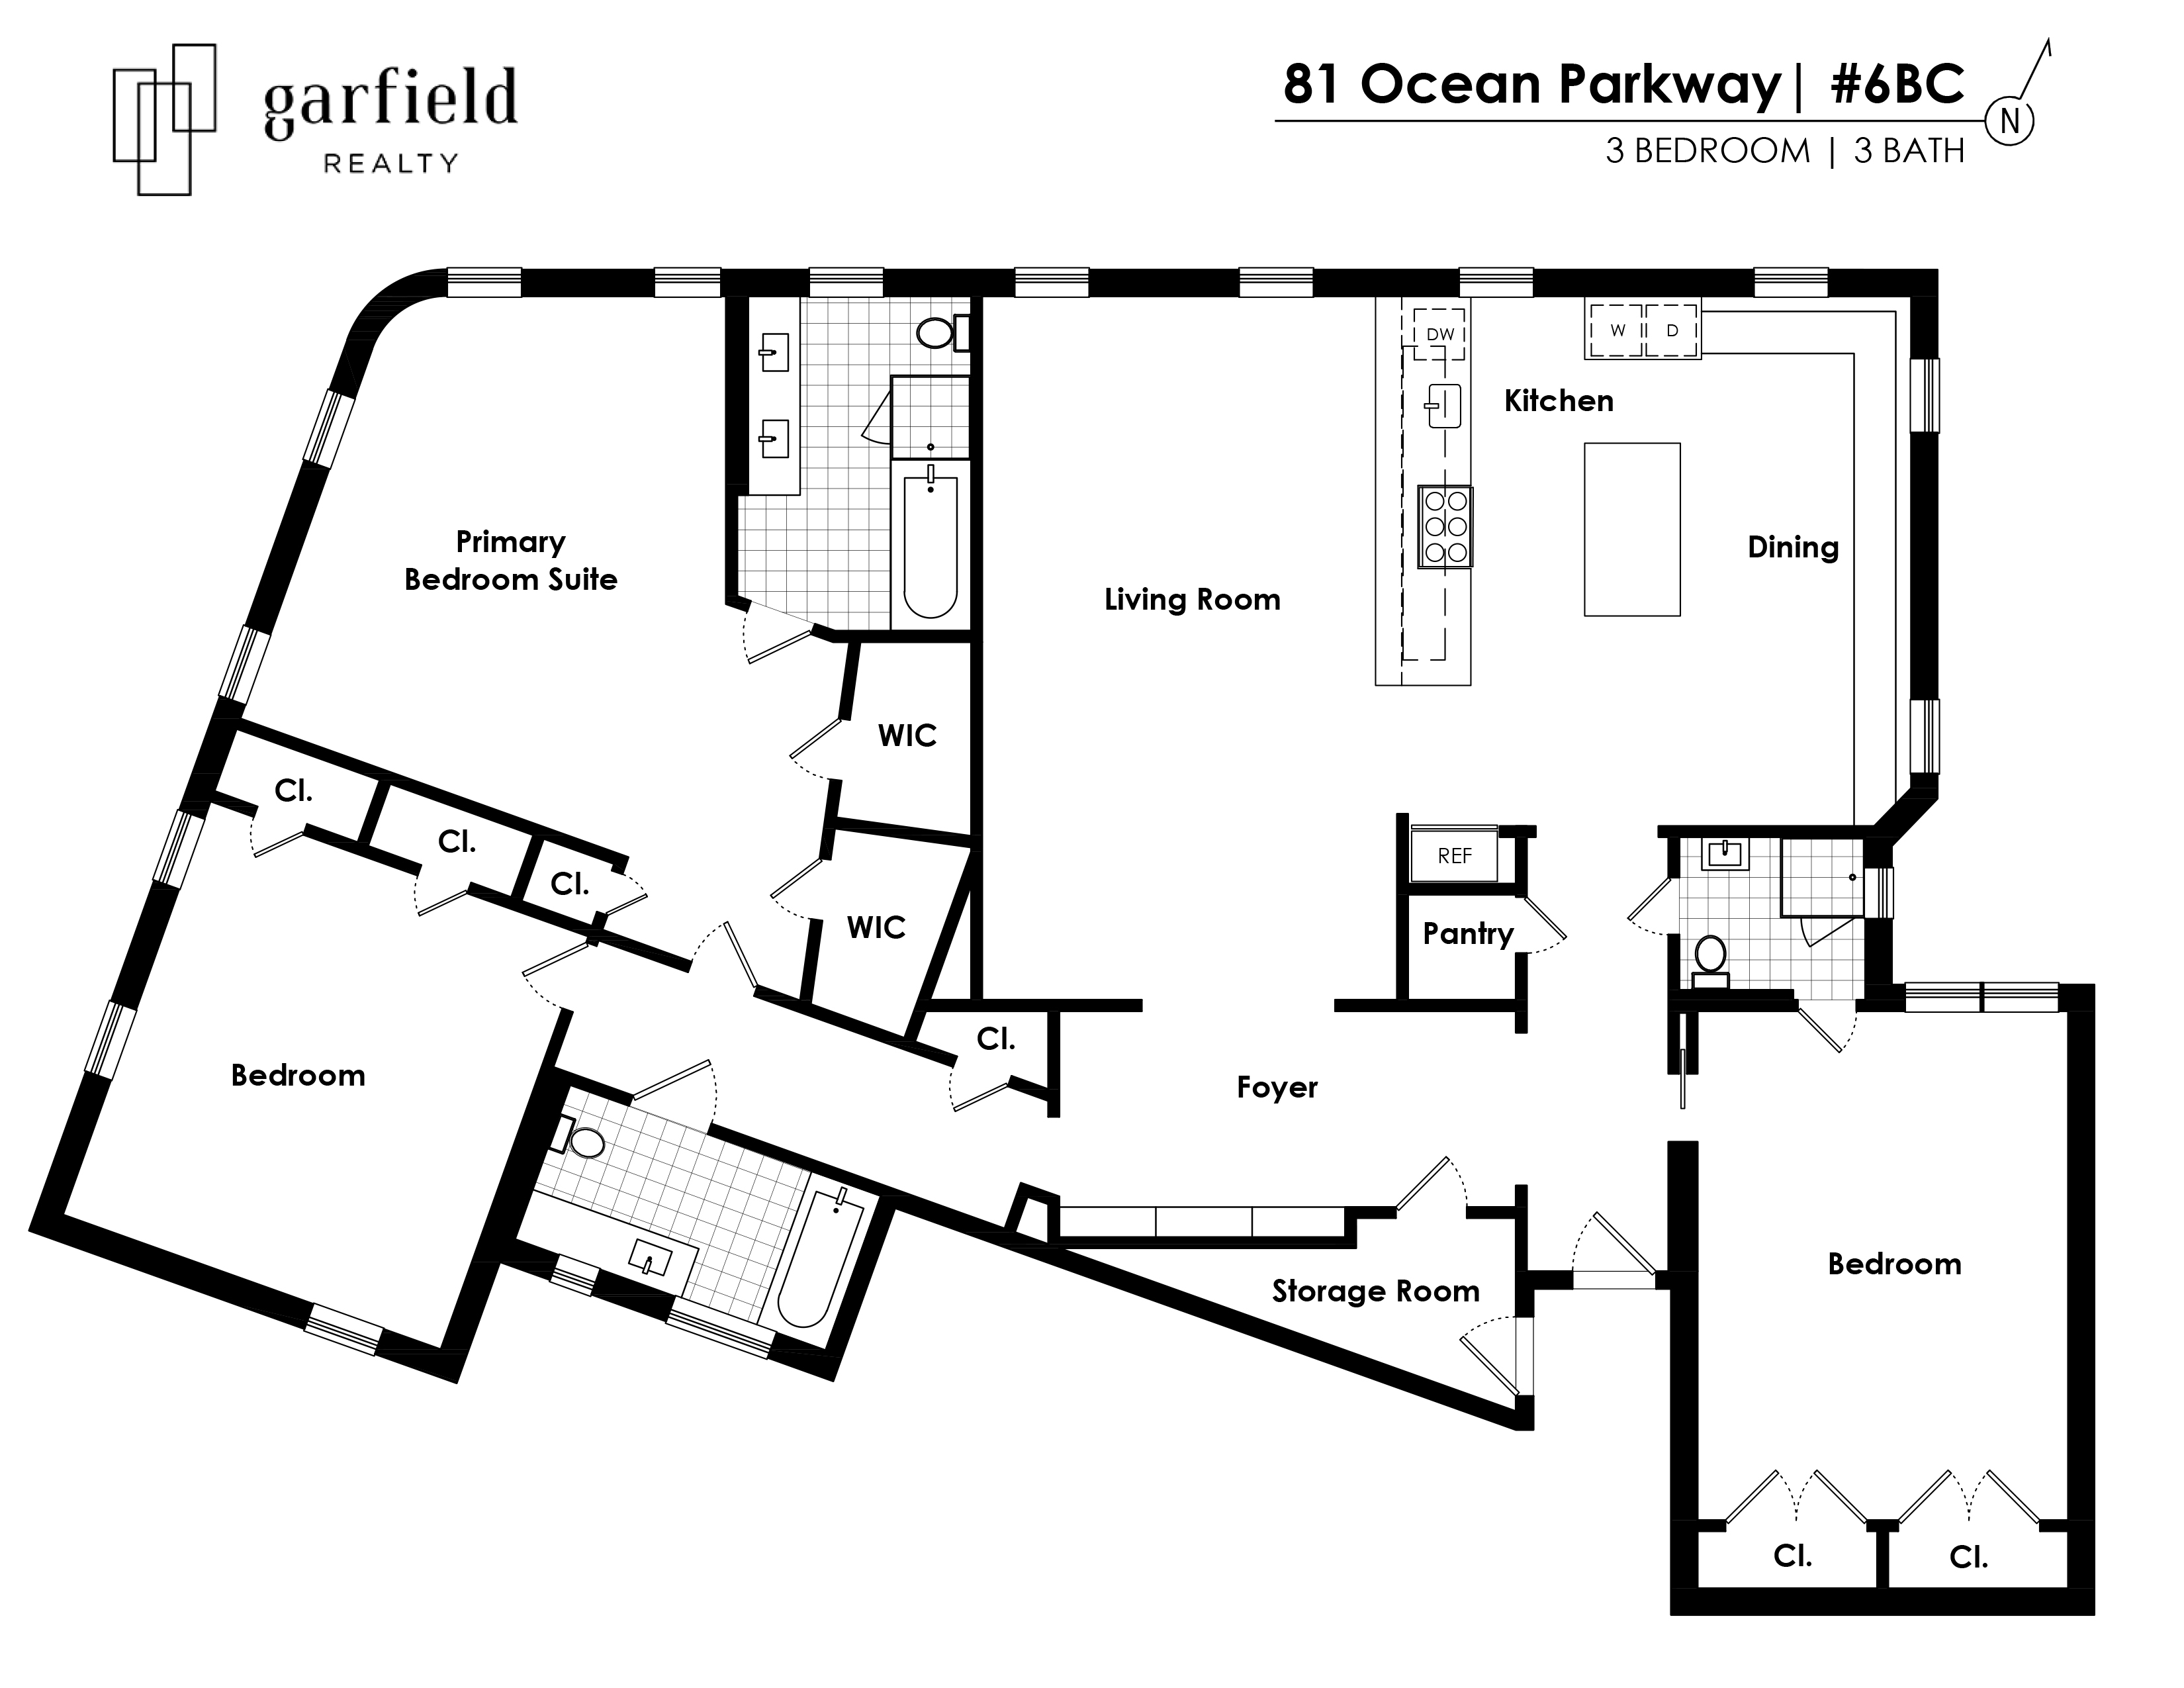 Floorplan of 81 Ocean Pkwy